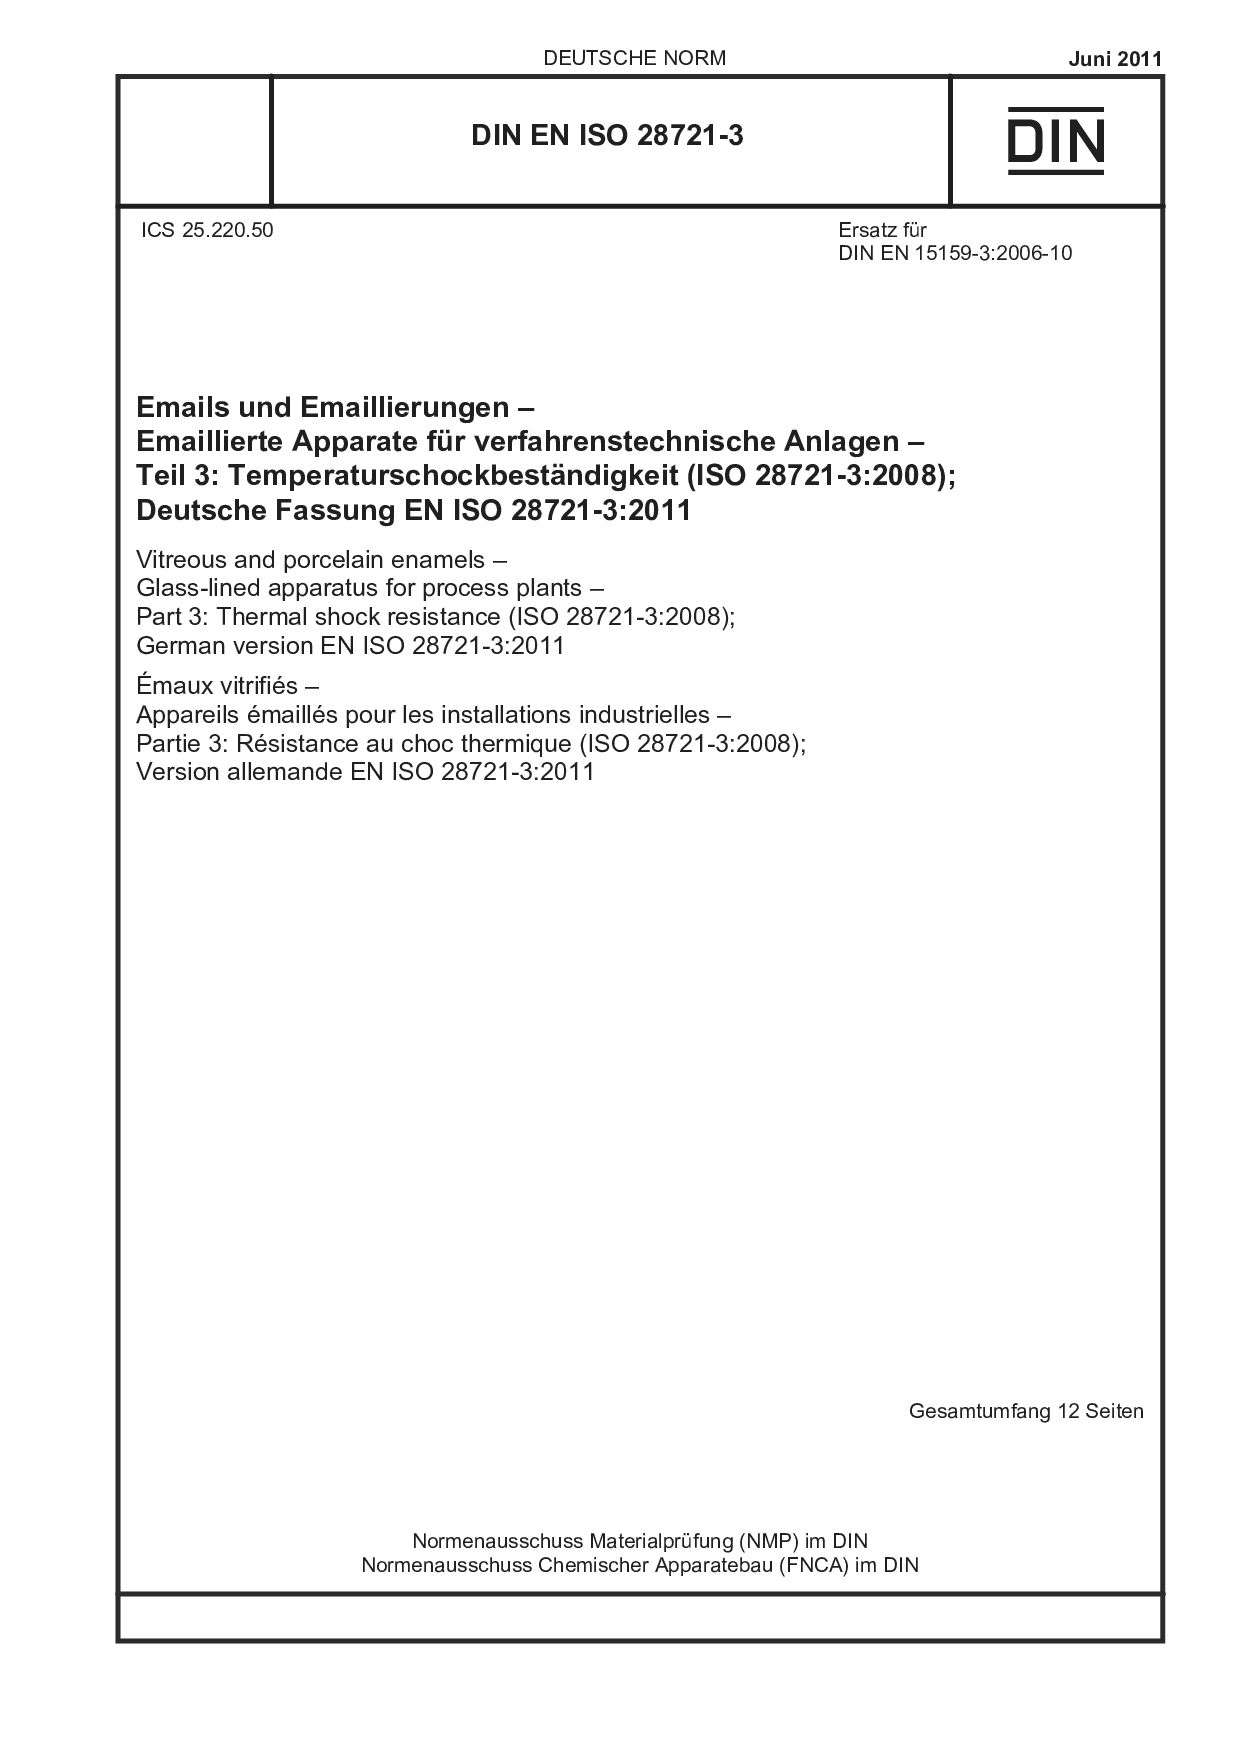 DIN EN ISO 28721-3:2011封面图